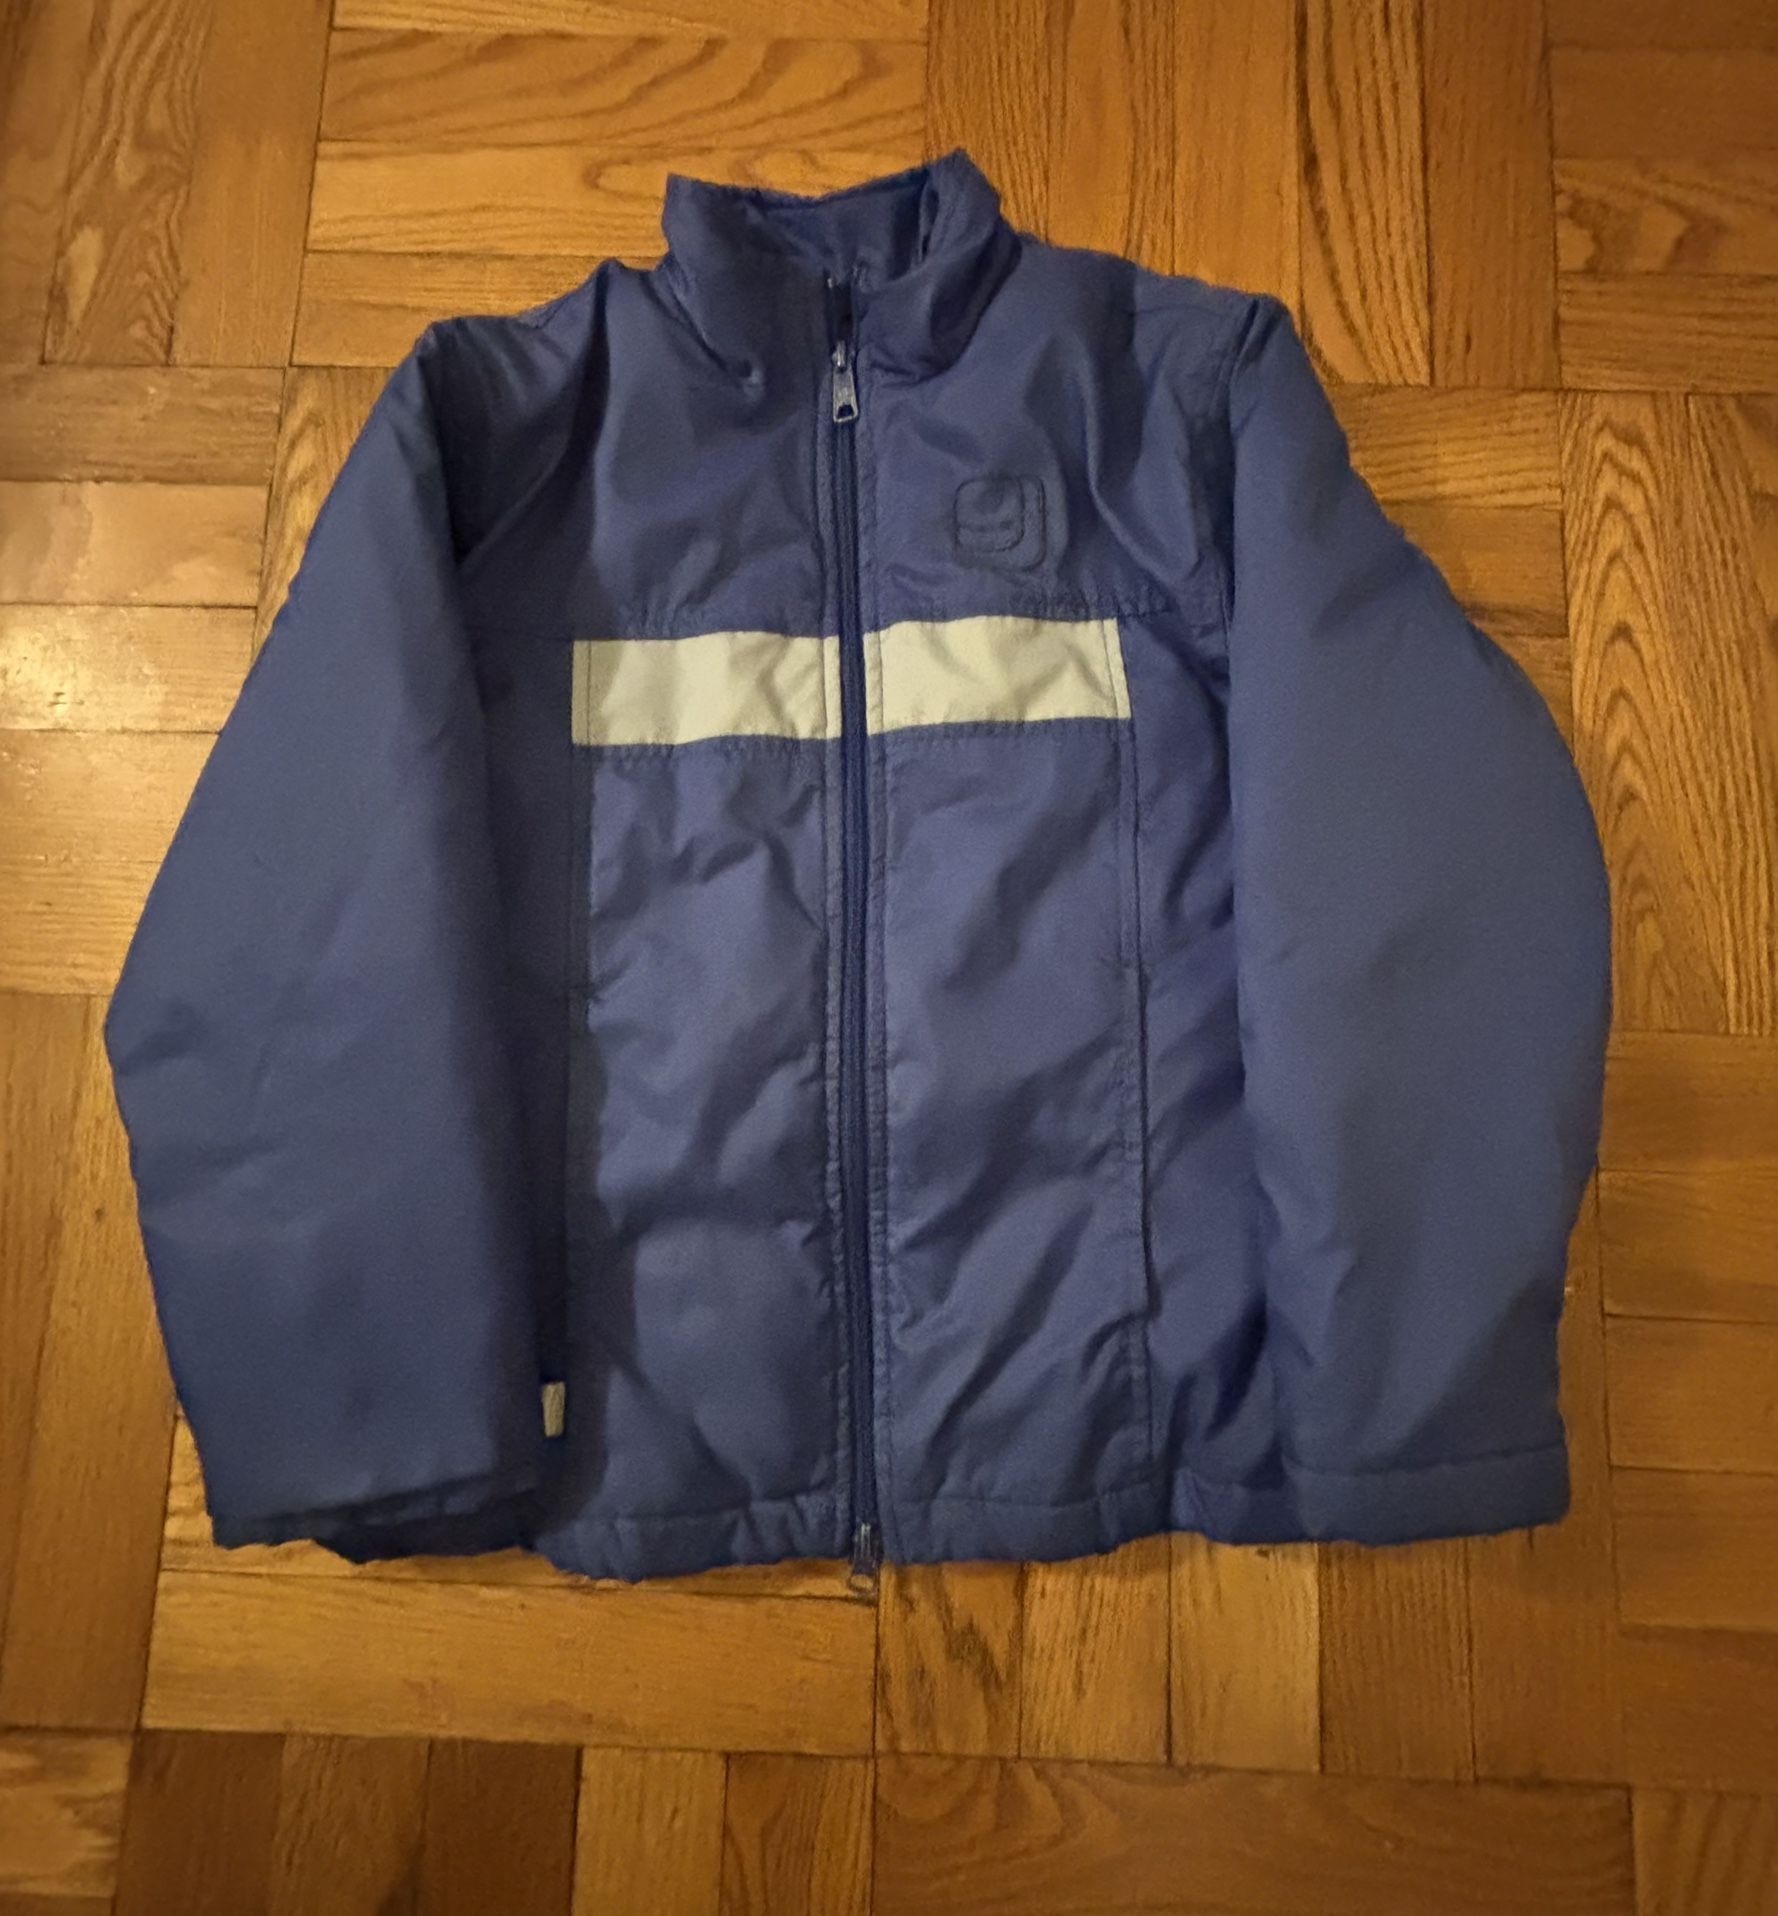 Vintage nike jacket